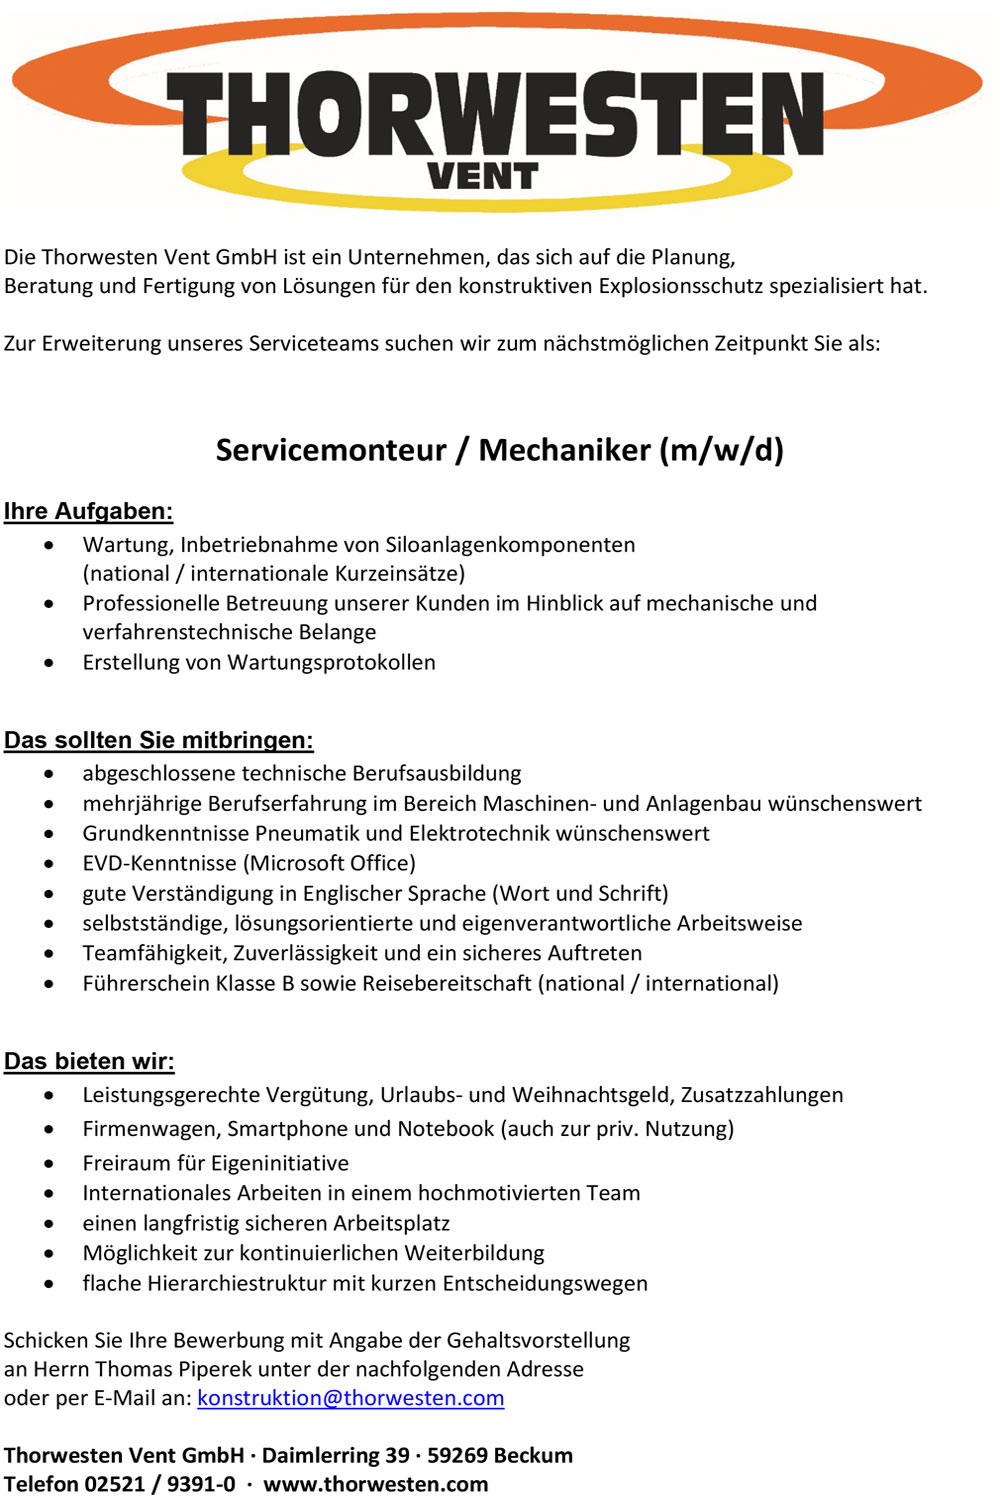 Servicetechniker / Mechaniker (m/w/d)